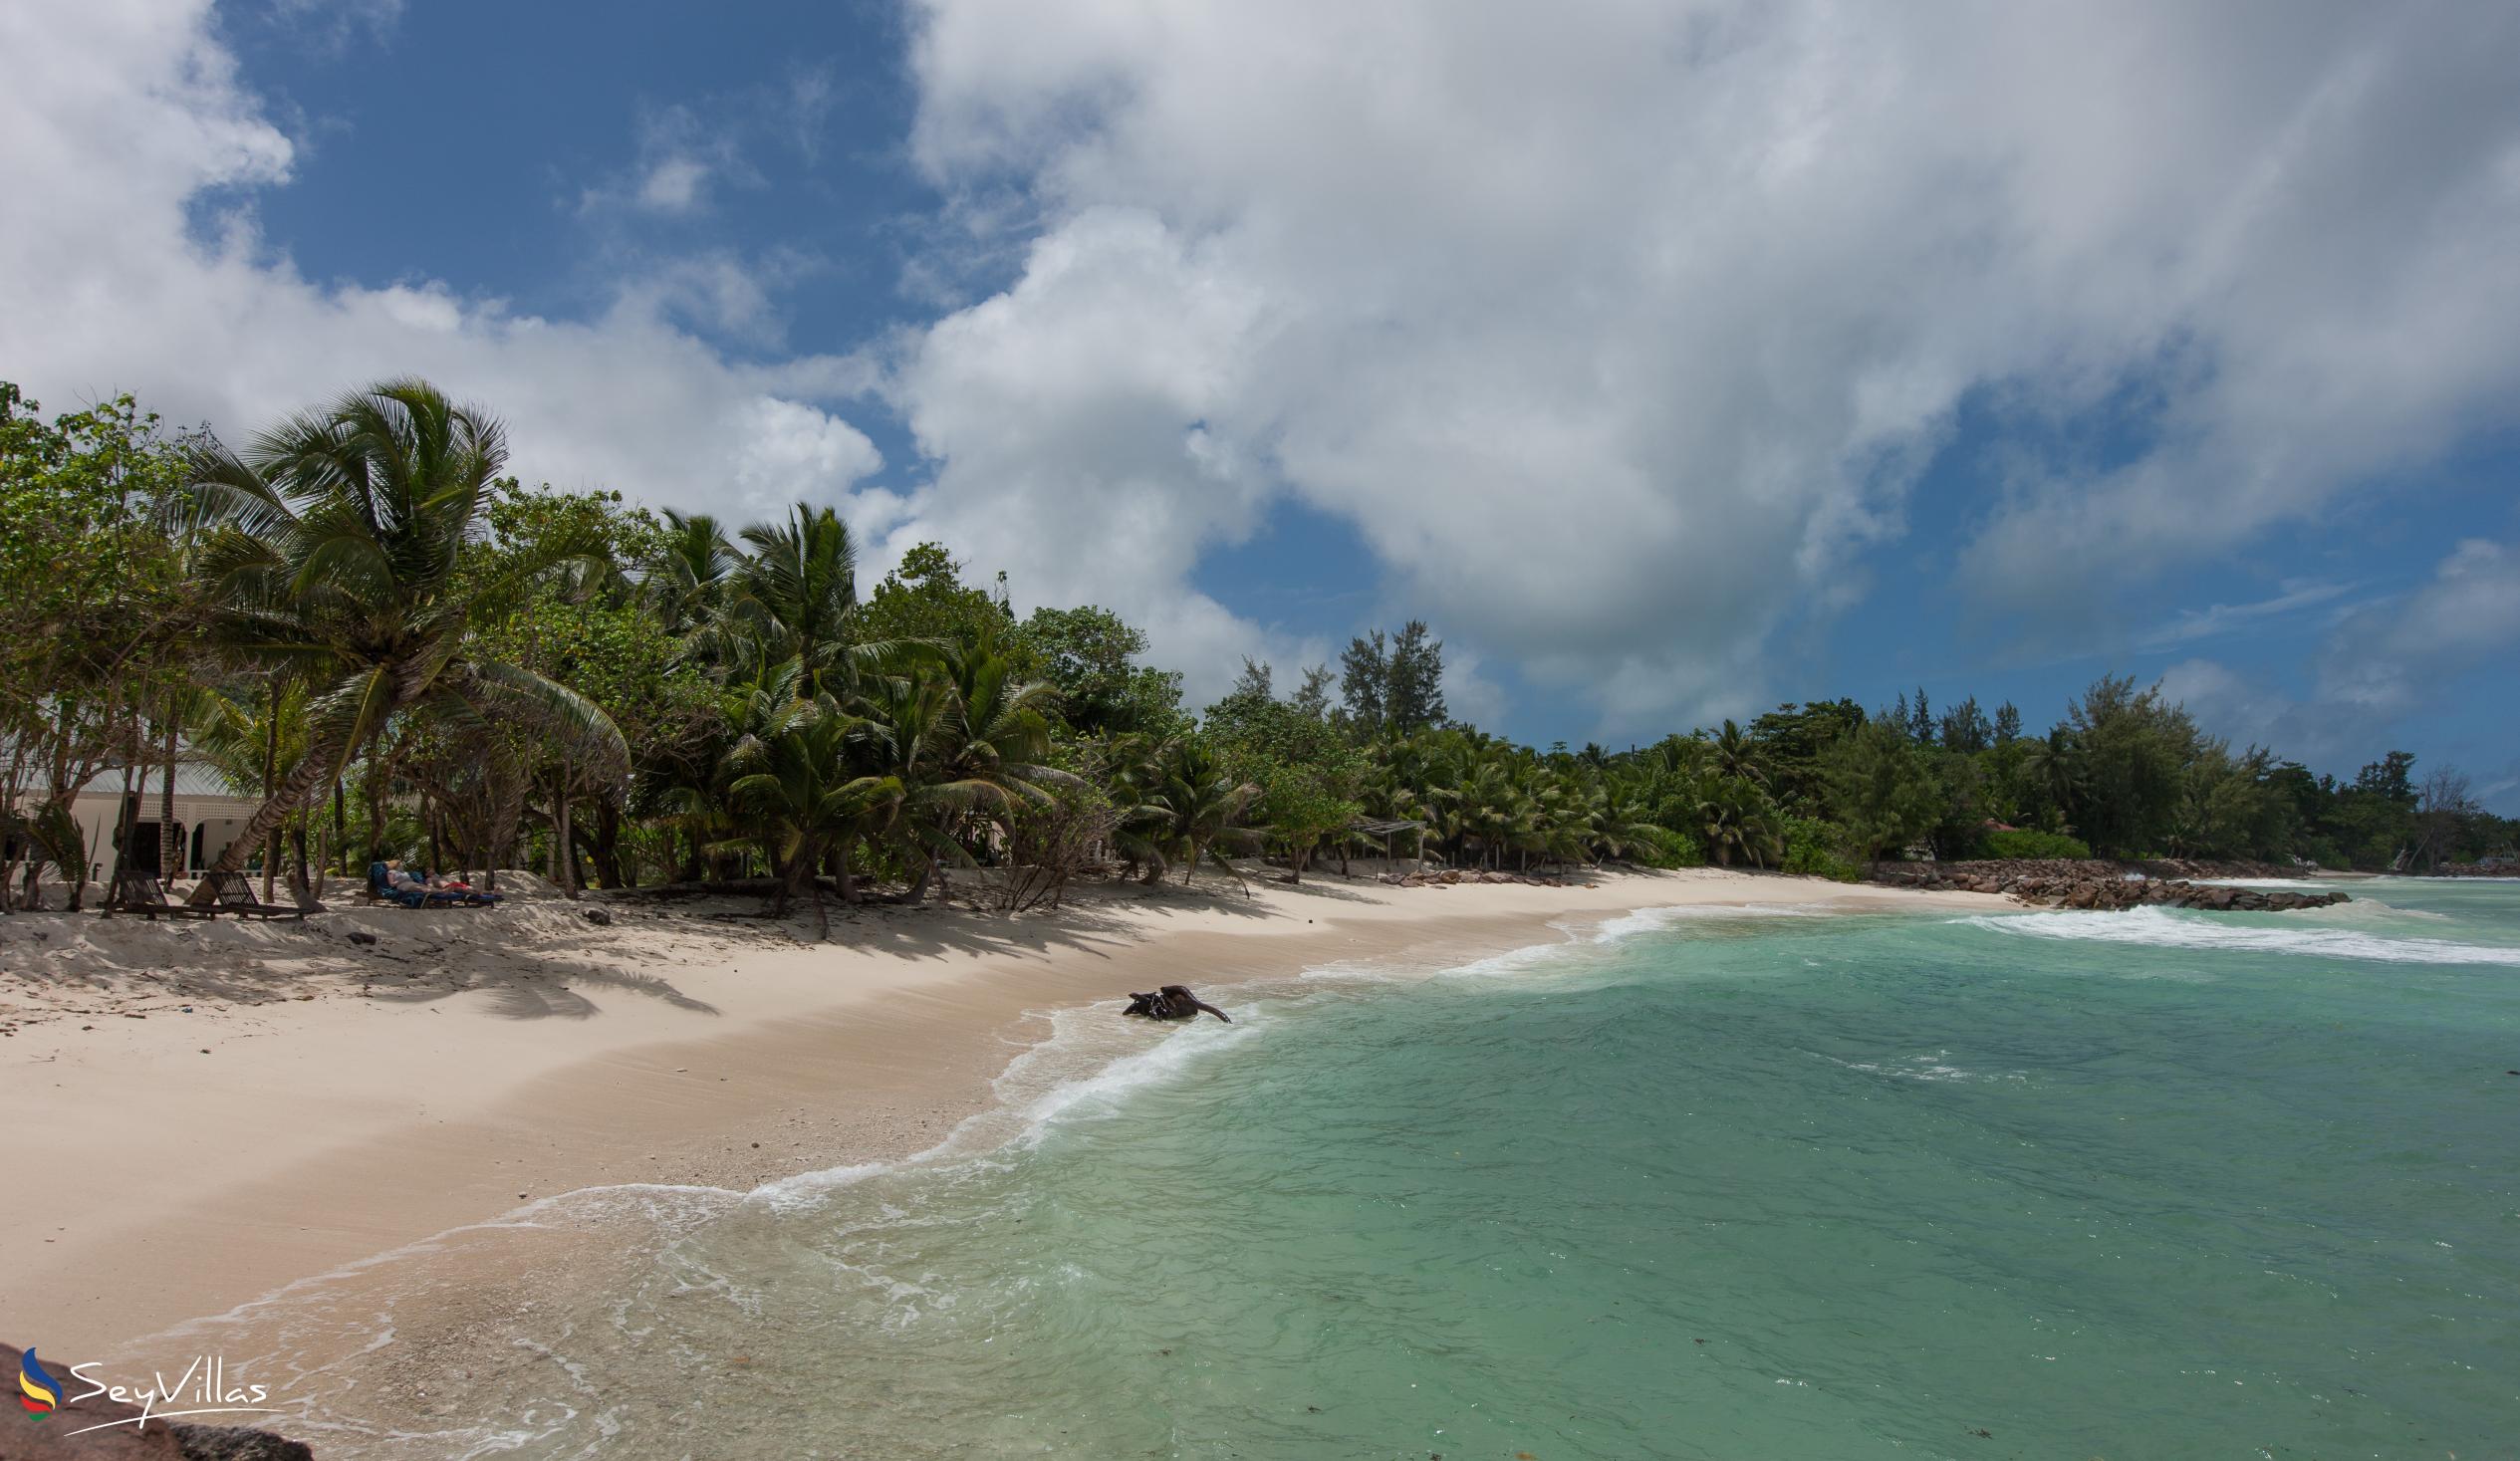 Foto 39: Villa Admiral - Posizione - Praslin (Seychelles)